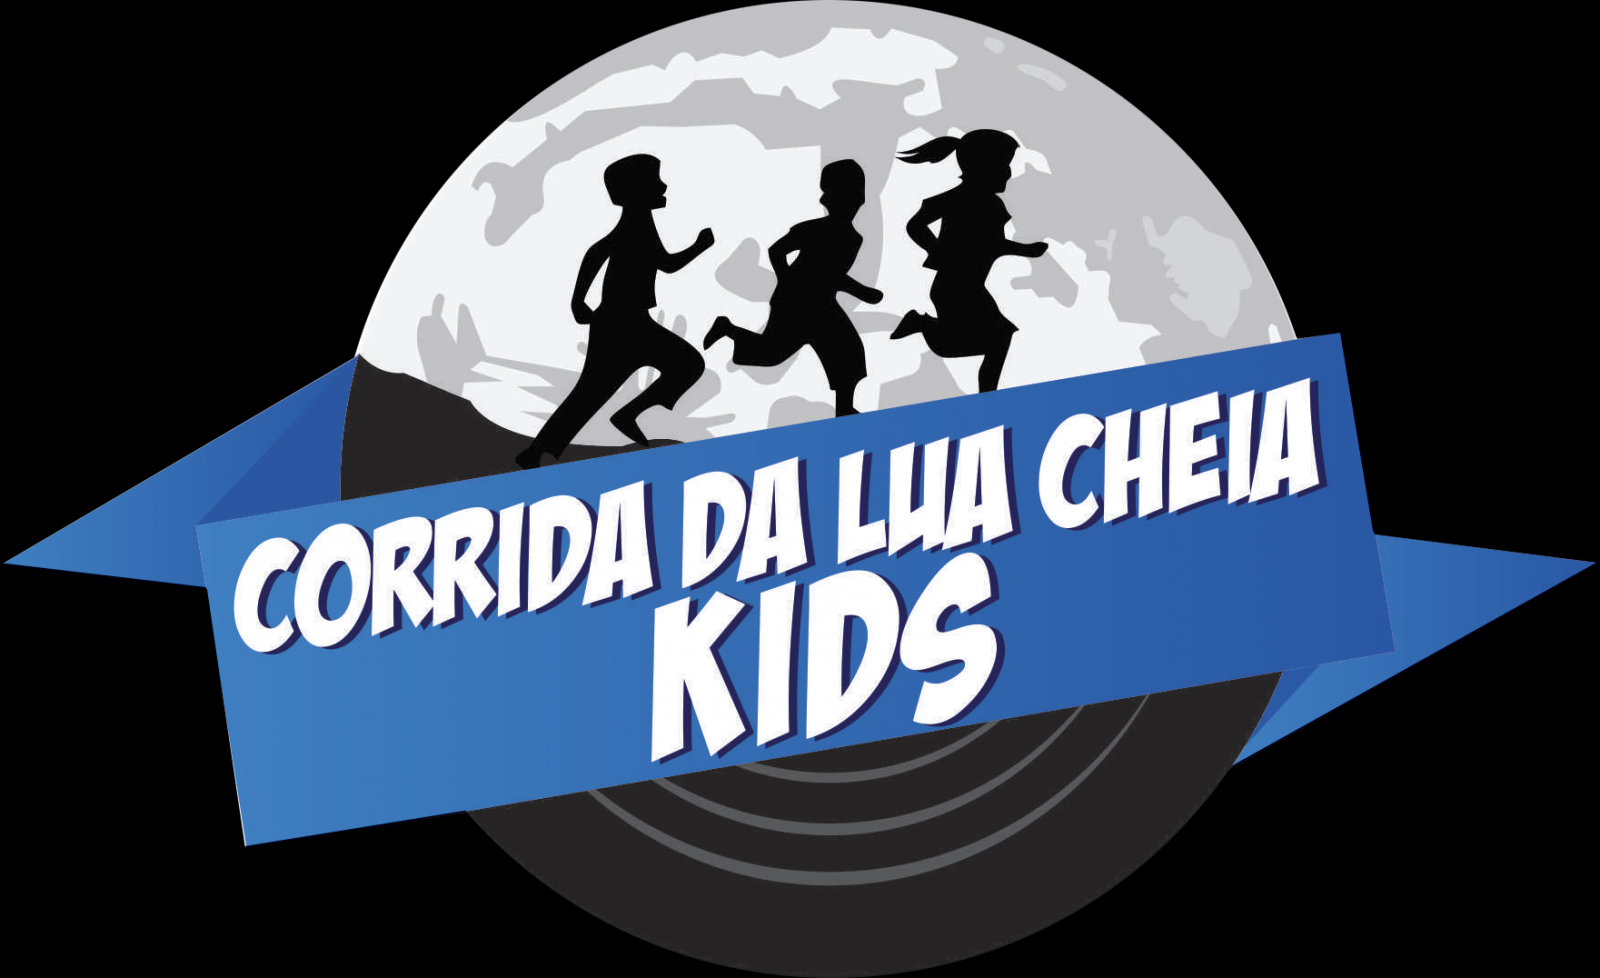 Corrida de rua kids realizada no Paraná bate recorde brasileiro - News Rondônia